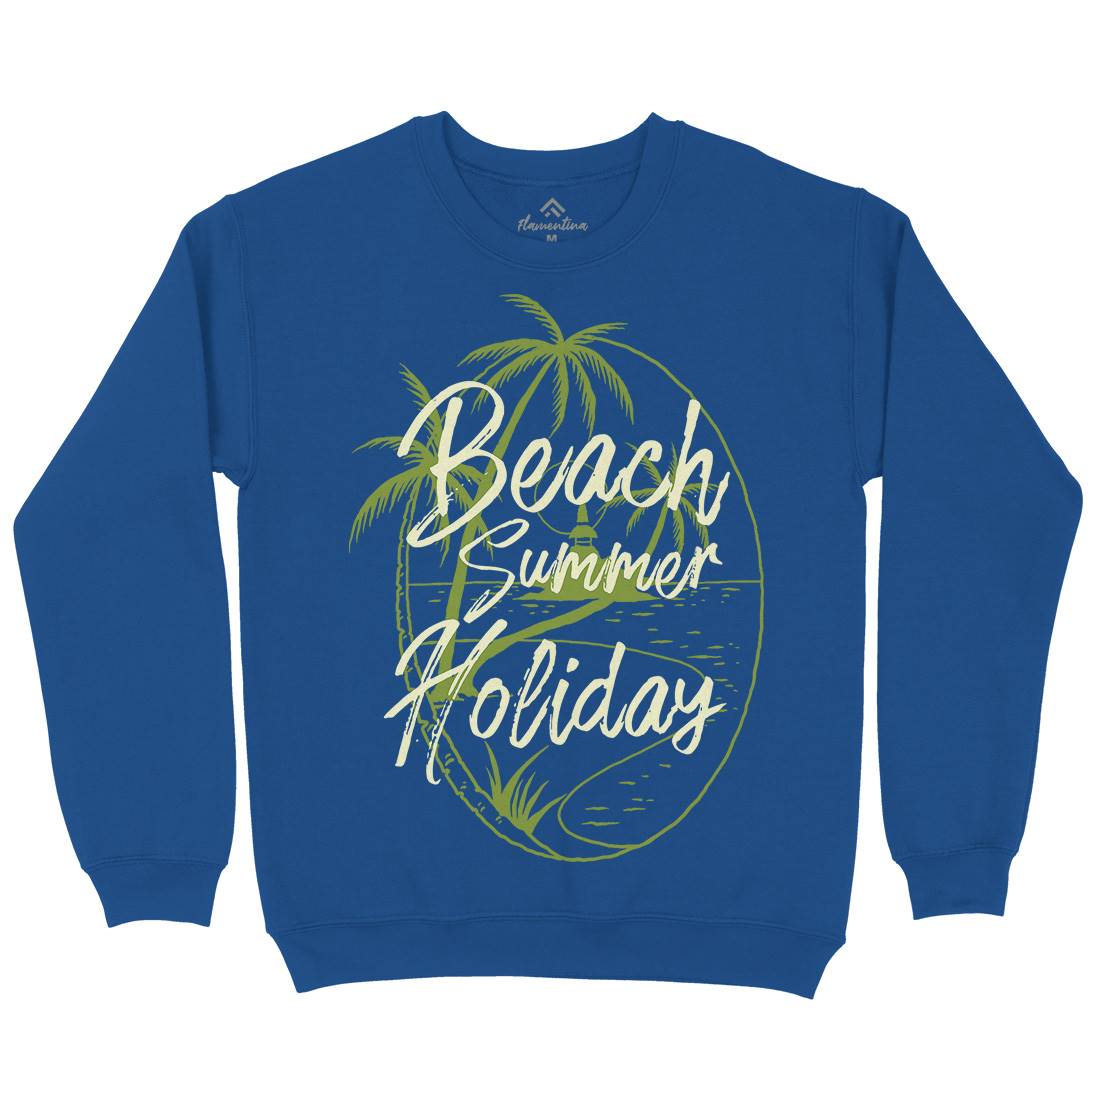 Beach Island Kids Crew Neck Sweatshirt Nature C709